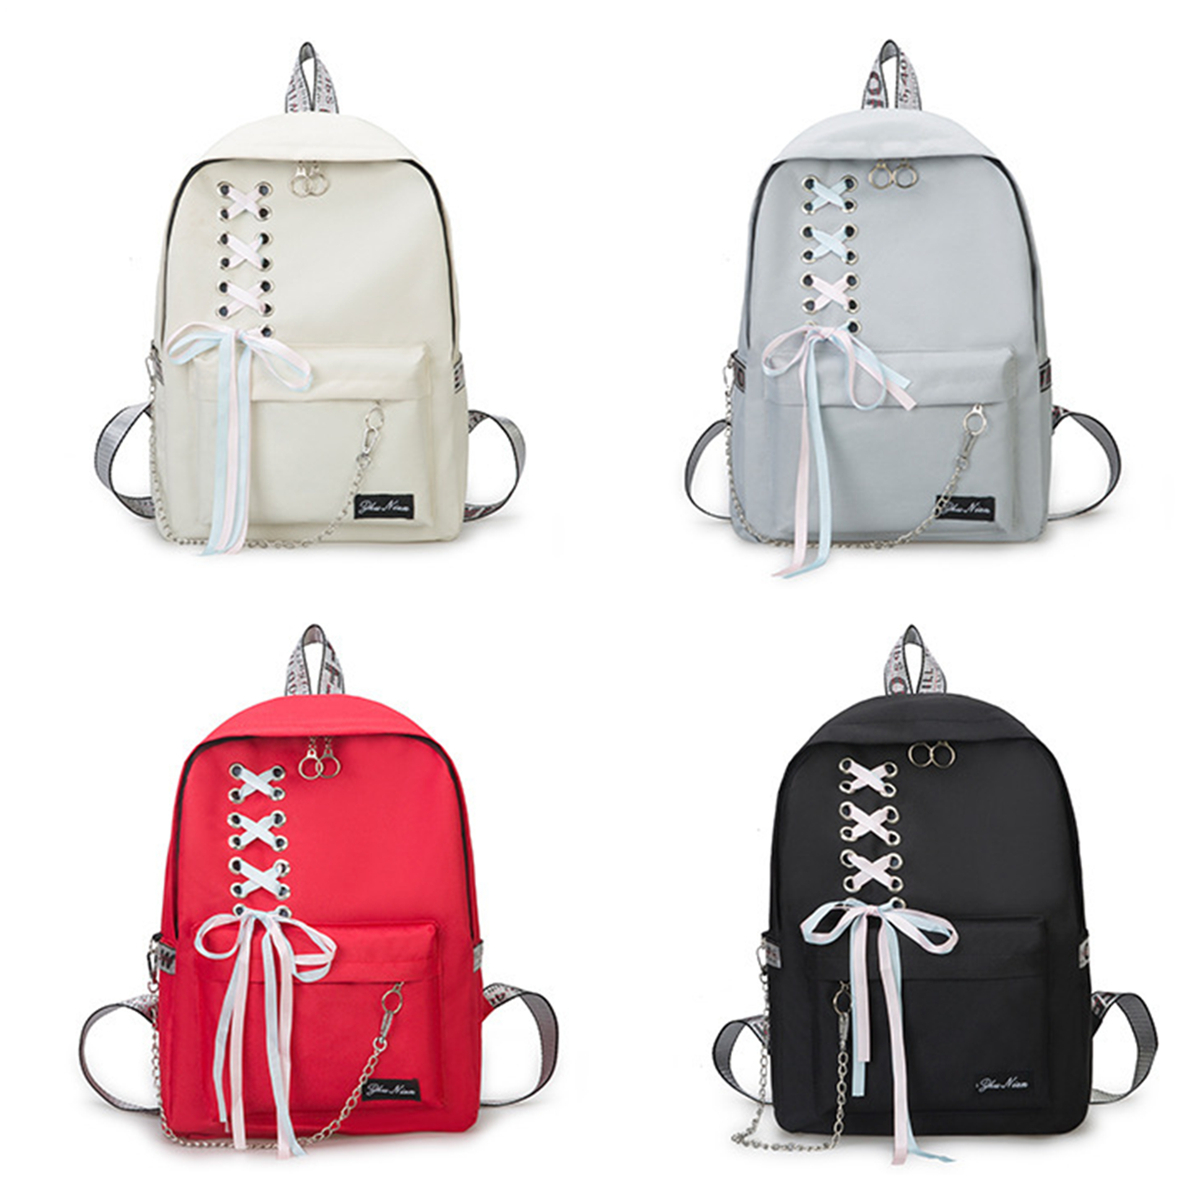 15L-Canvas-Backpack-Student-School-Rucksack-Shoulder-Bag-Outdoor-Travel-1549518-1